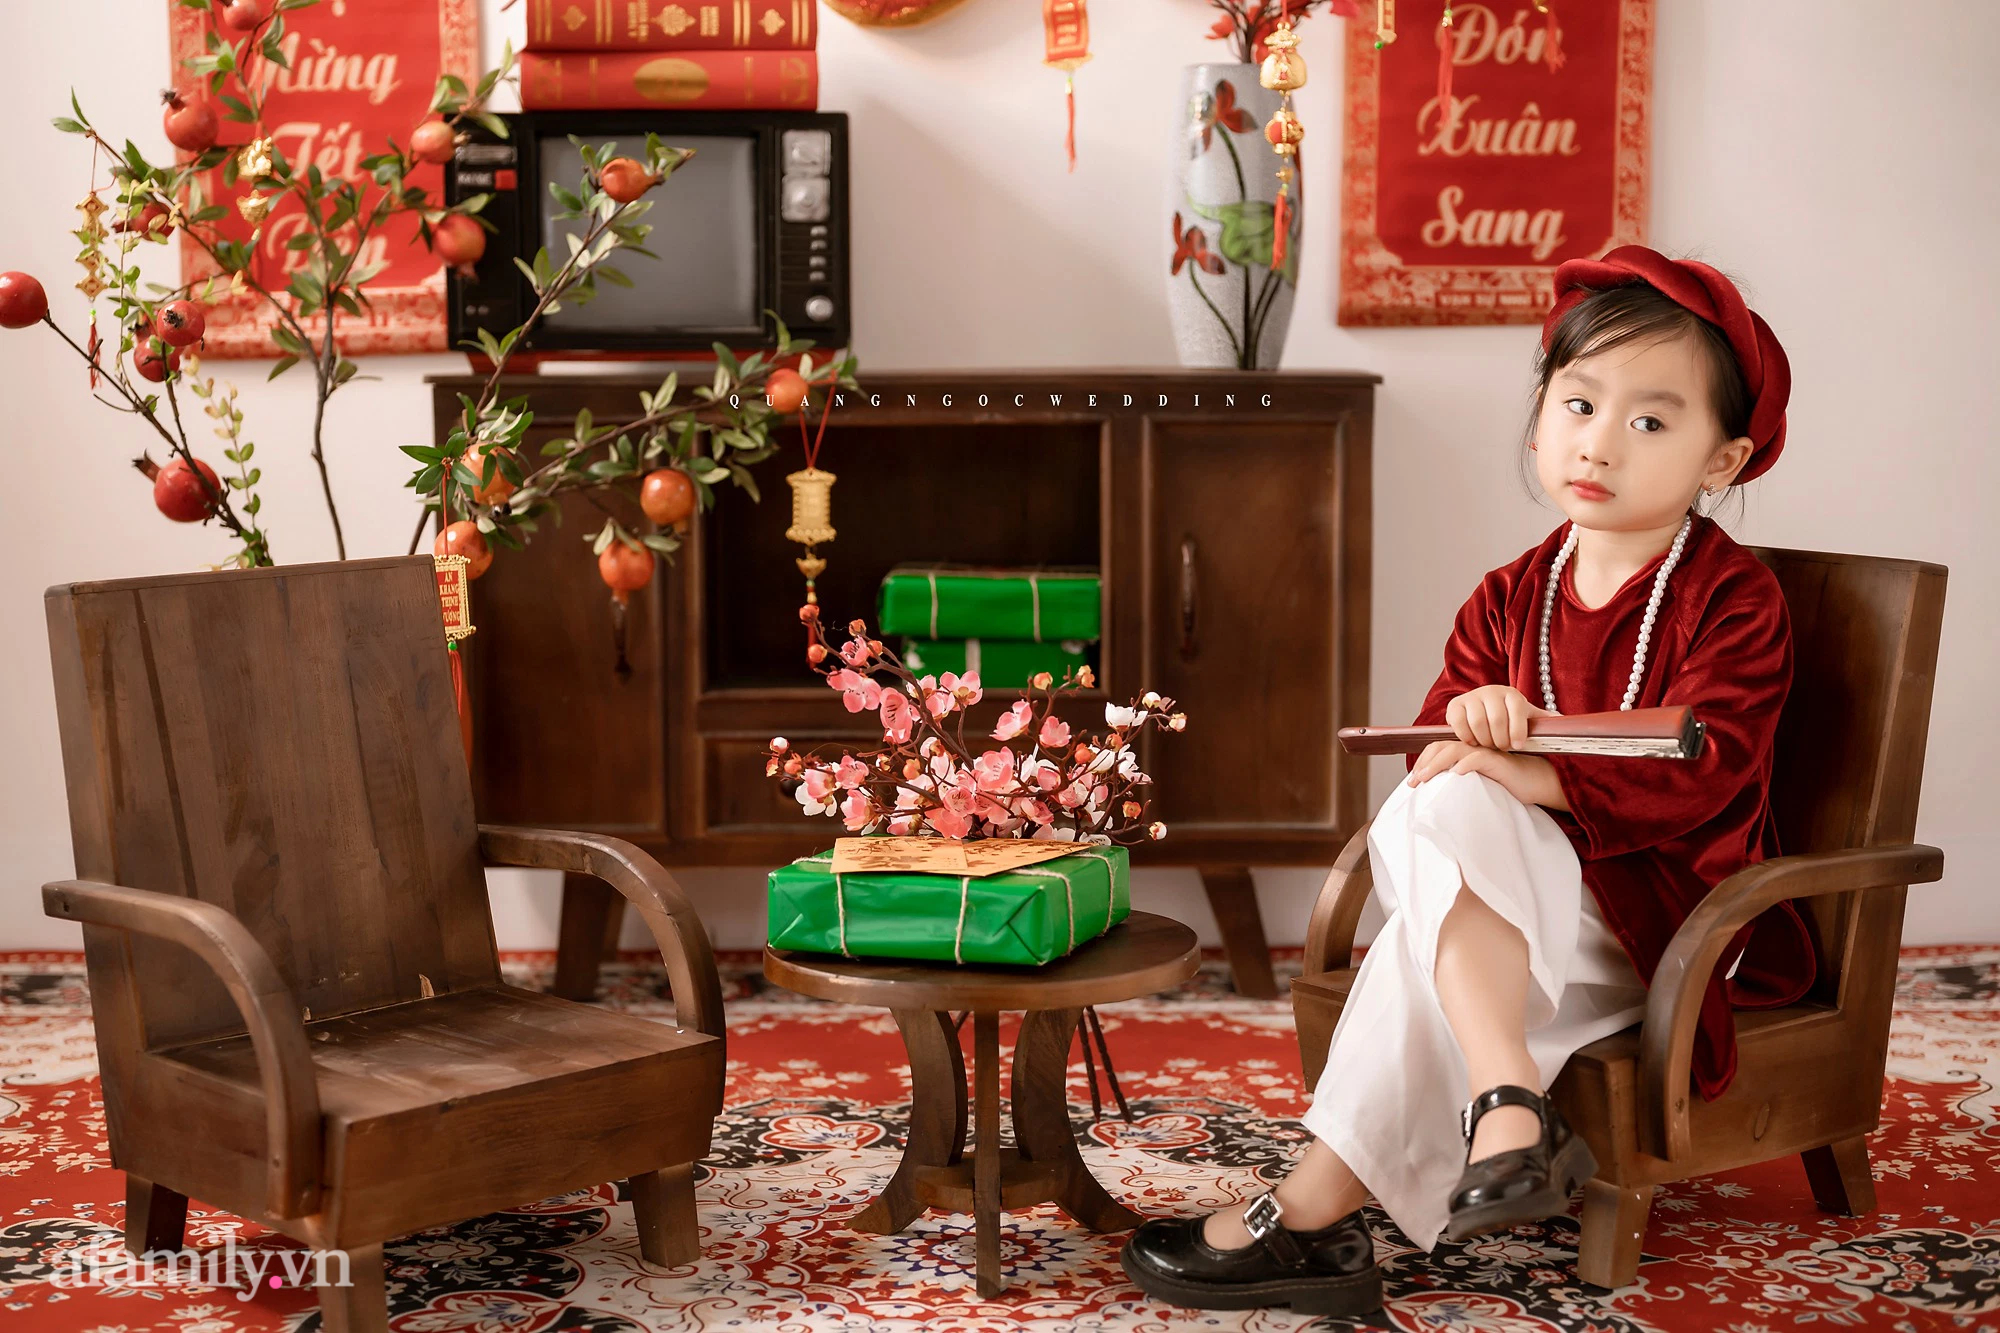 Tết Nhâm Dần: Tết Nguyên Đán là ngày lễ truyền thống quan trọng của người Việt Nam. Năm Nhâm Dần đến, hãy cùng nhau tìm hiểu thêm về những nét đẹp đặc trưng trong truyền thống ngày Tết - một dịp để gia đình sum vầy và gắn bó với nhau. Hình ảnh đẹp sẽ giúp ta lưu giữ những khoảnh khắc trọng đại trong đời.